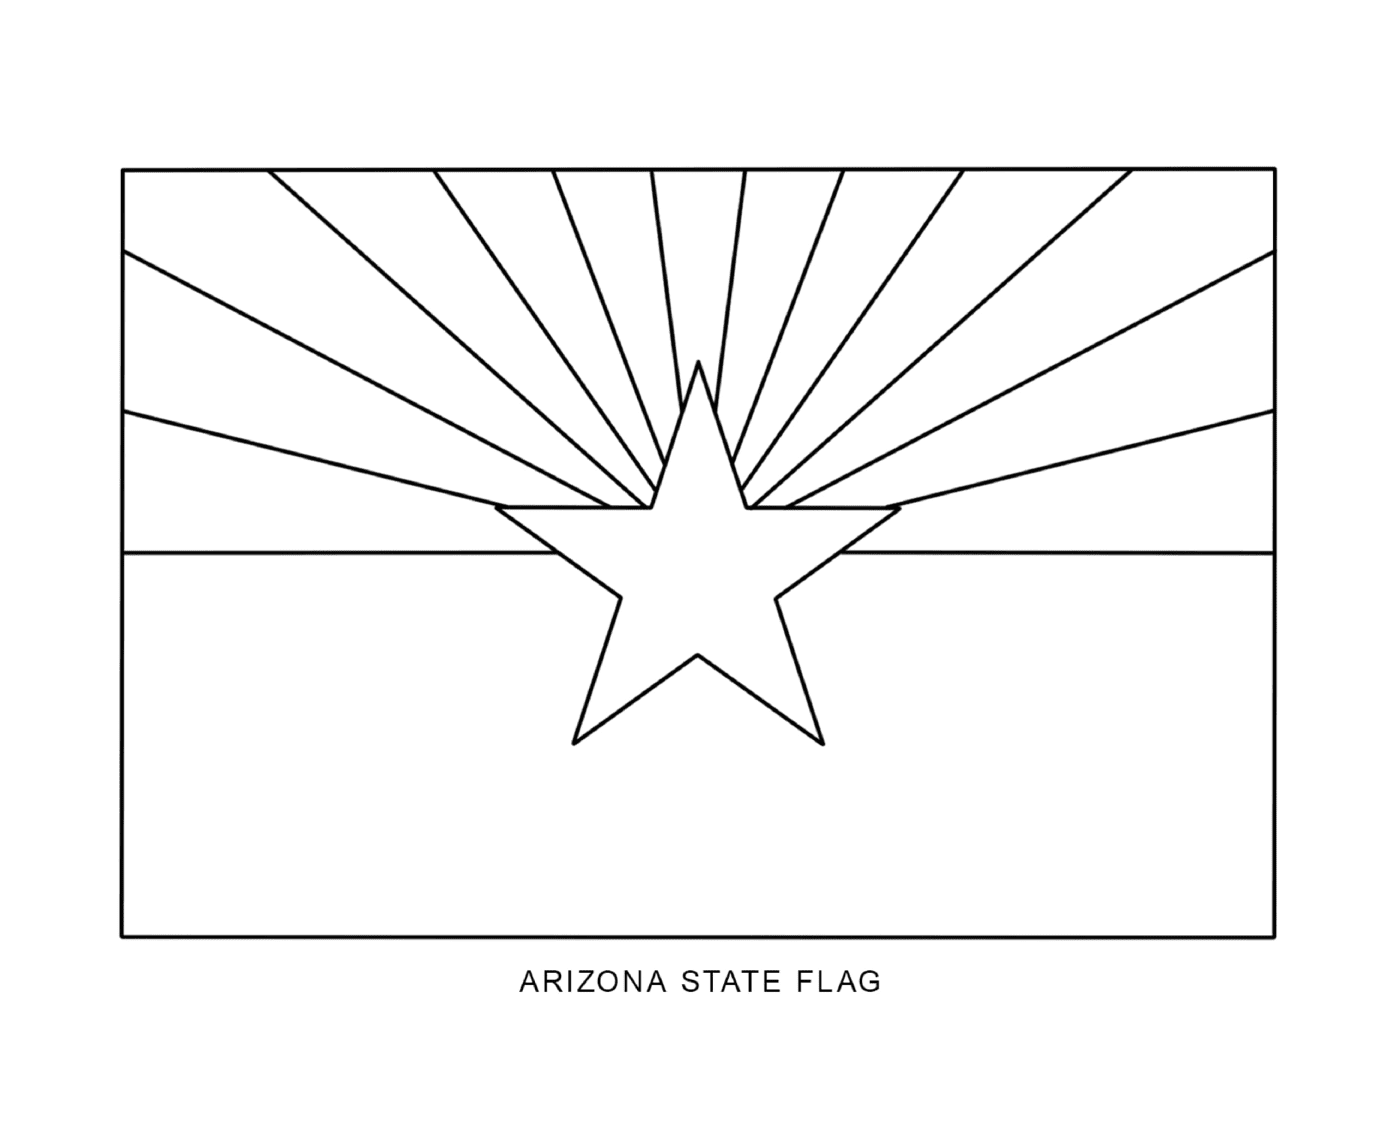  Bandeira do estado do Arizona desenhada 